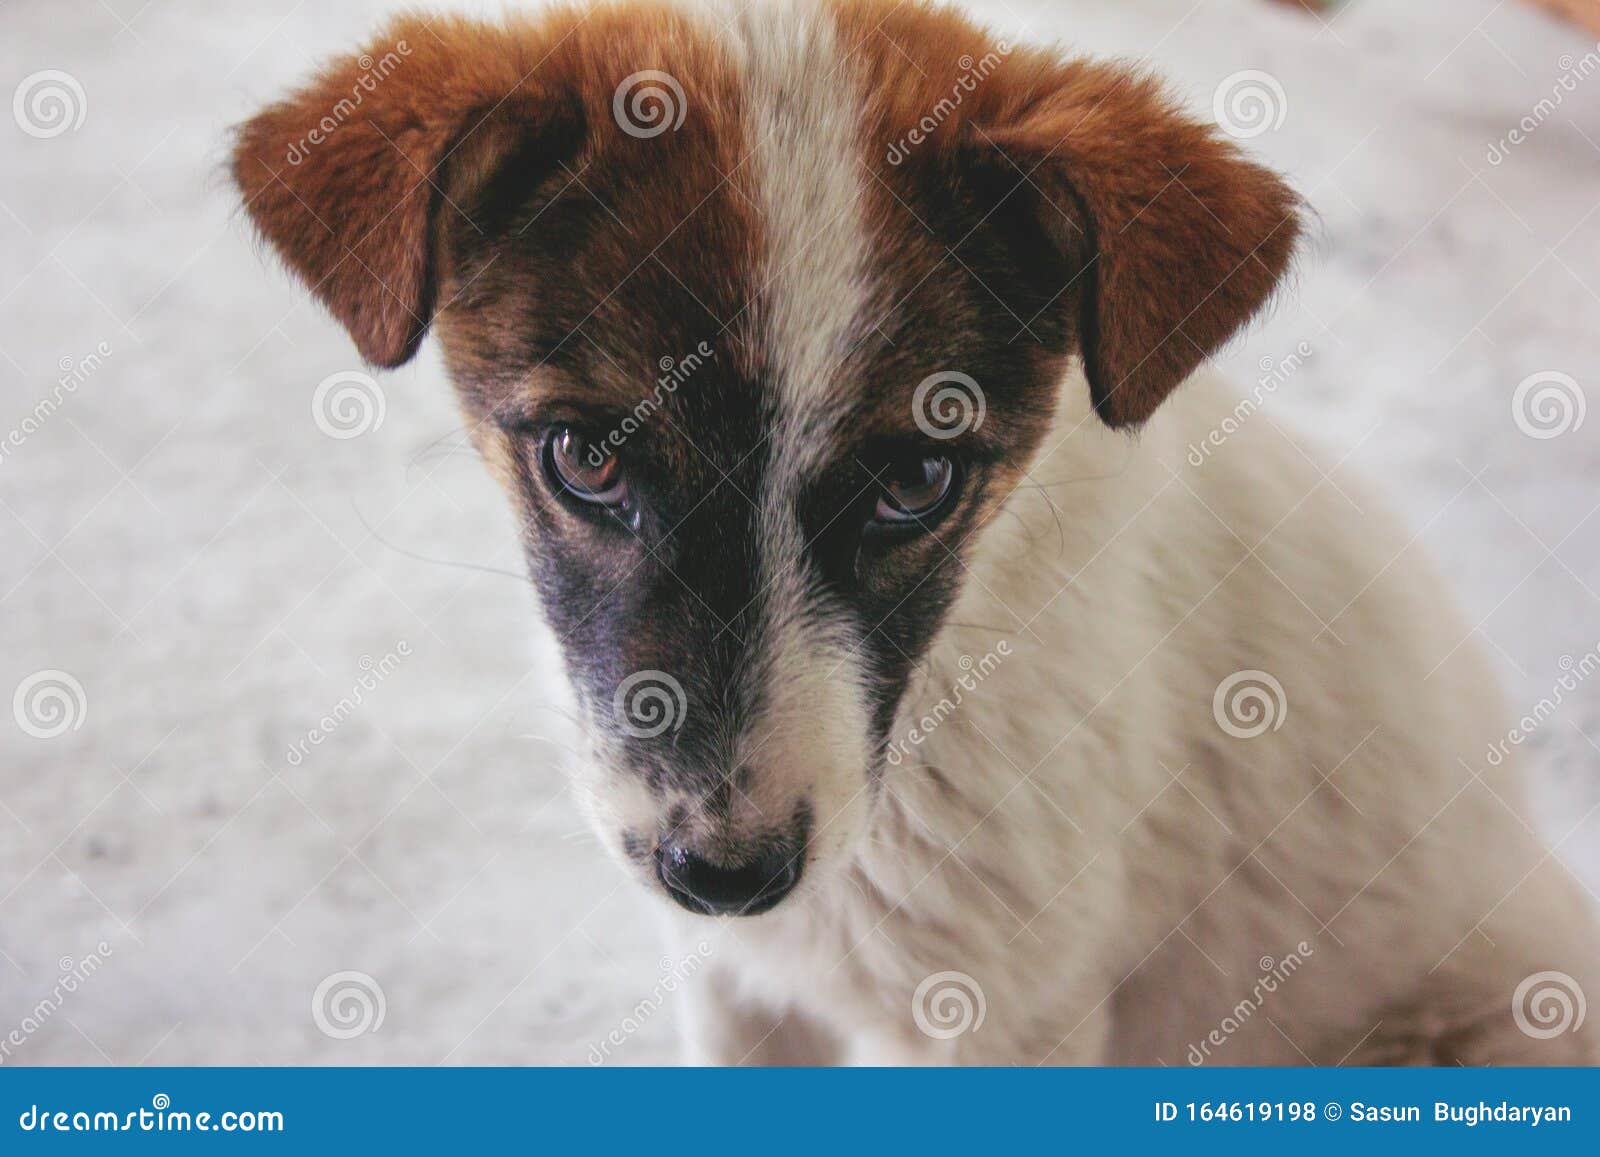 100 多张免费的“孤独的狗”和“孤独”照片 - Pixabay